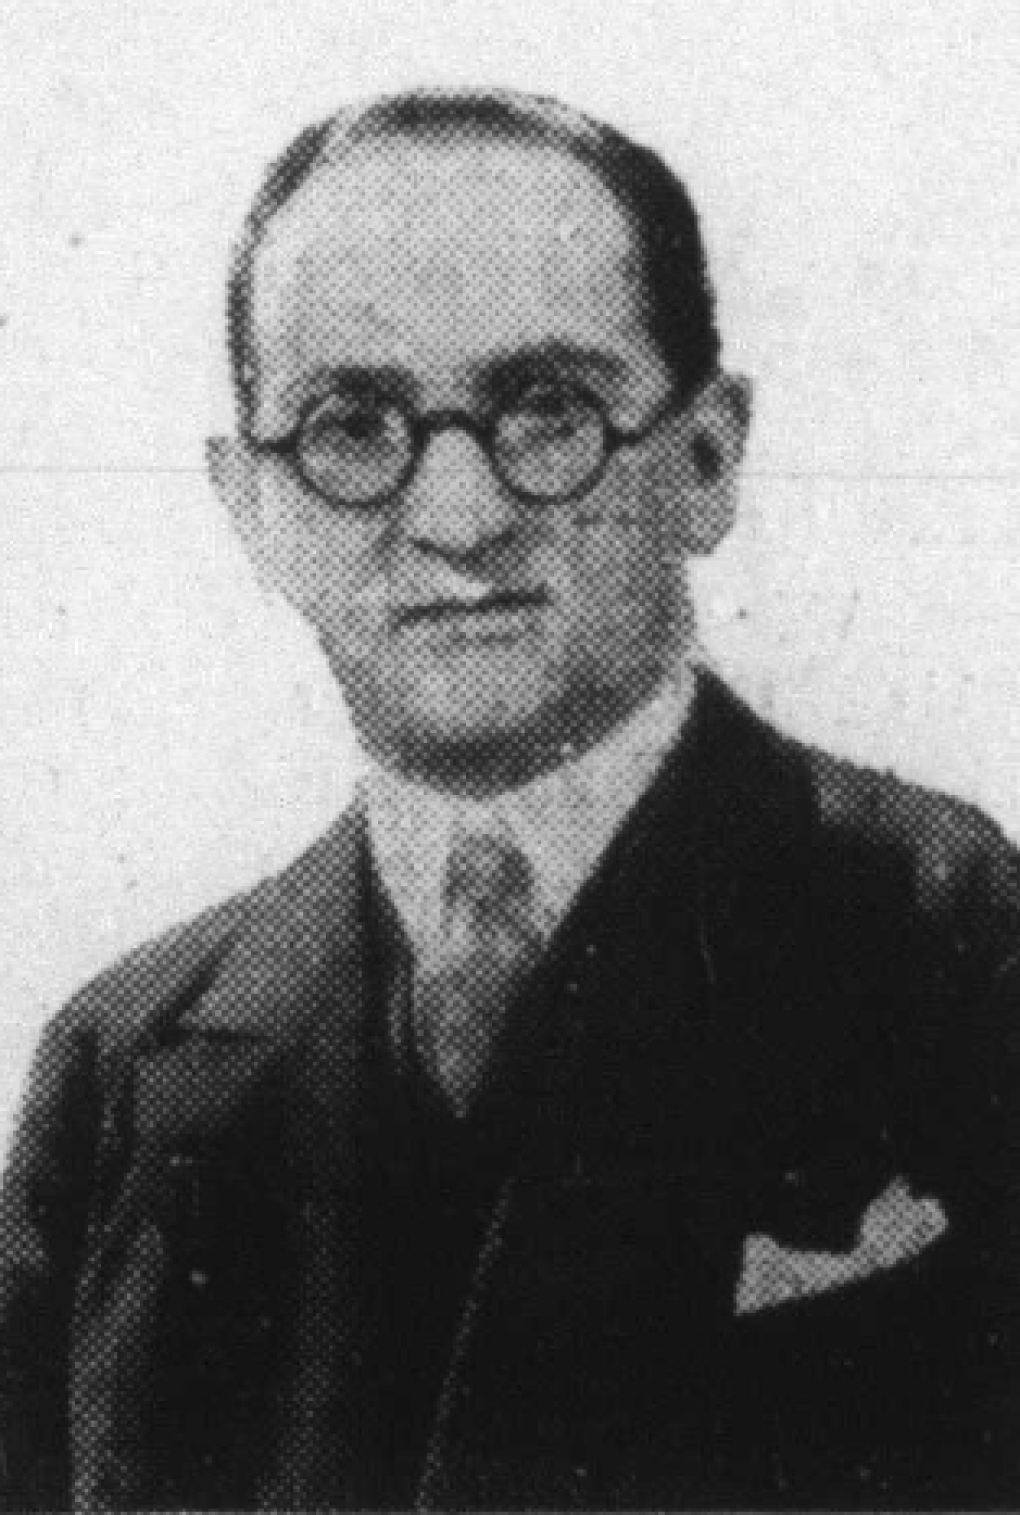 Guido Bagier in 1931 (Das europäische Atelier, Sondernummer des Film-Kurier, August 15, 1931).